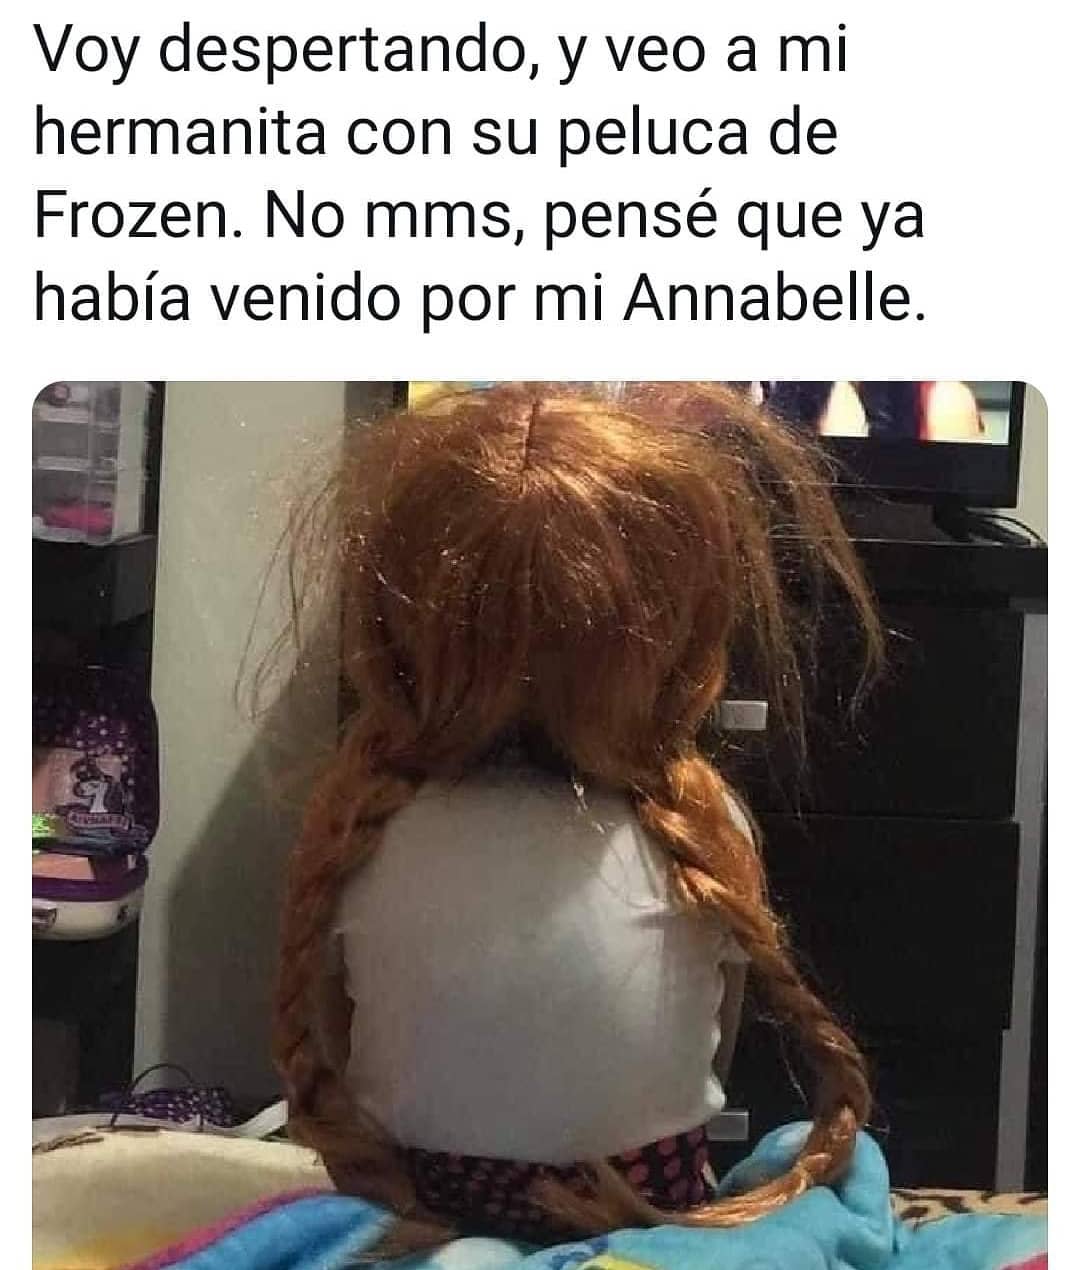 Voy despertando, y veo a mi hermanita con su peluca de Frozen. No mms, pensé que ya había venido por mi Annabelle.